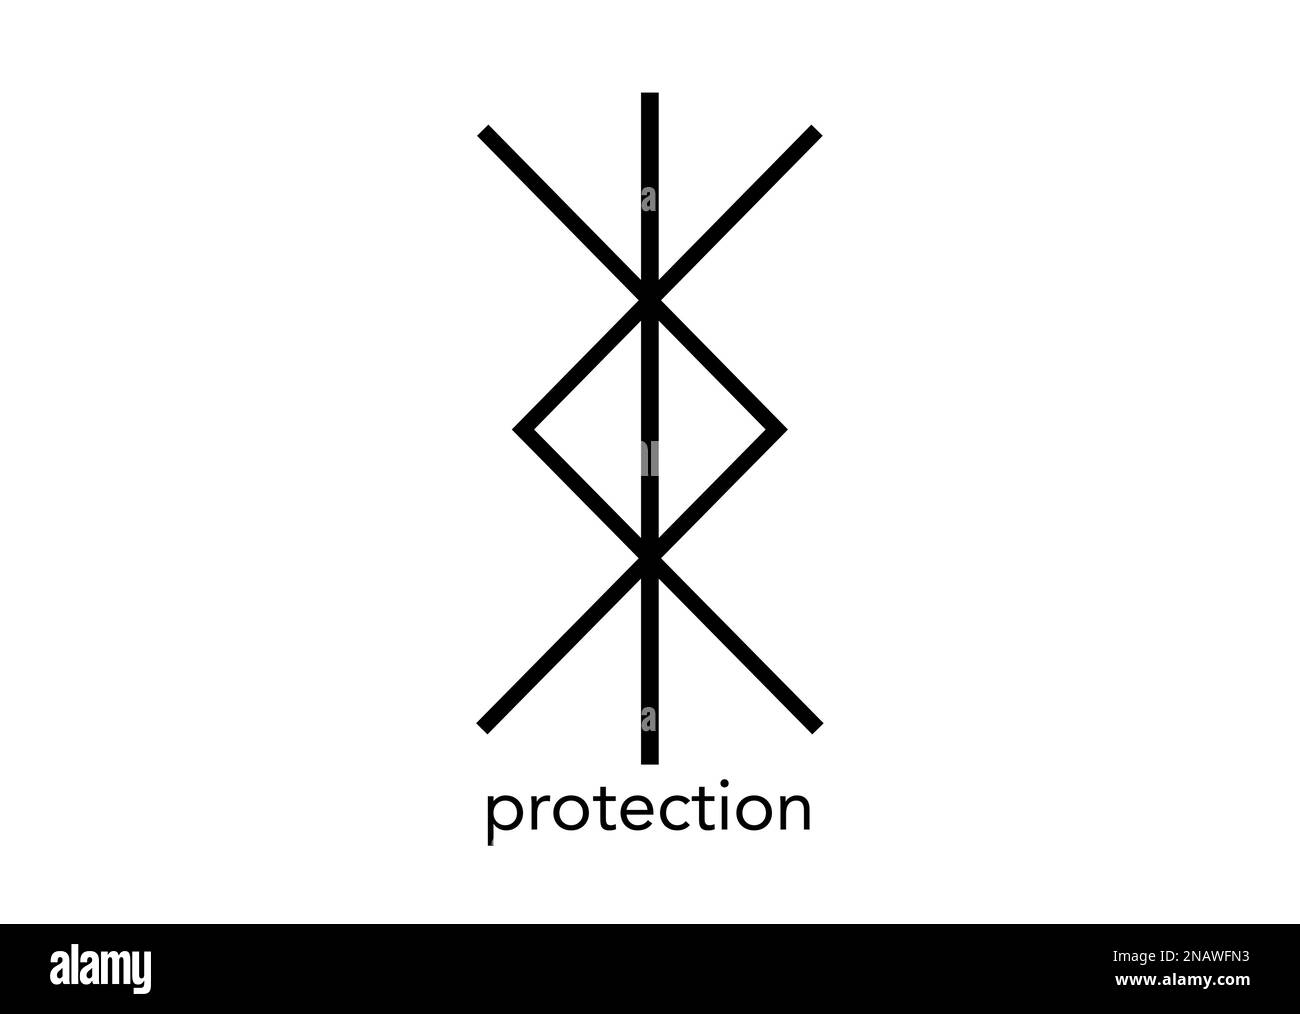 Symbole Norse pour la protection, Nordic viking bind rune Magic script  tatouage, logo mystique signe illustration vectorielle isolée sur fond  blanc Image Vectorielle Stock - Alamy